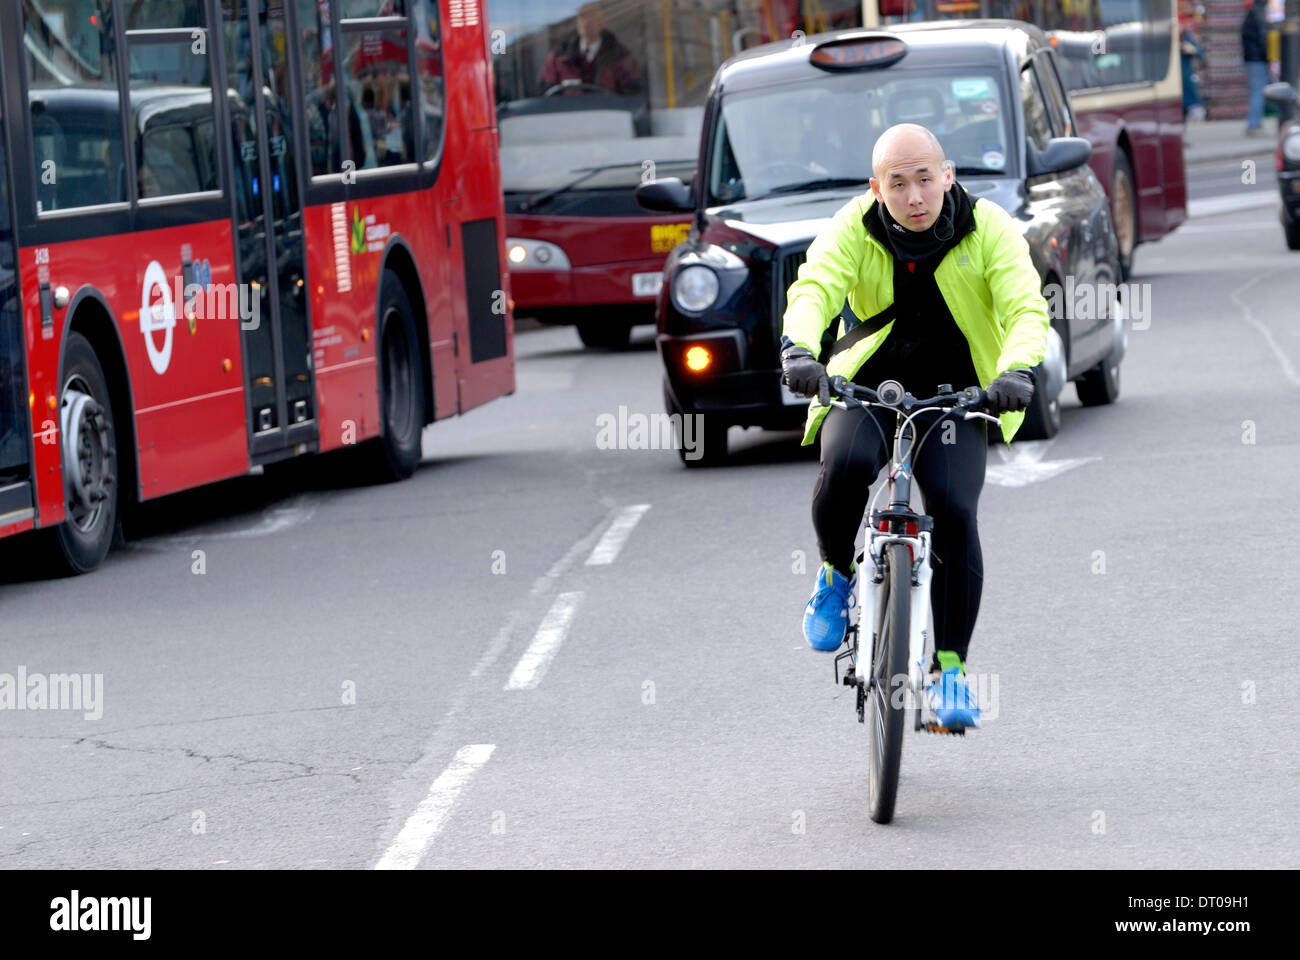 Londres, Angleterre, Royaume-Uni. Lorsque la circulation des cyclistes dans le centre de Londres (Trafalgar Square) sans casque Banque D'Images